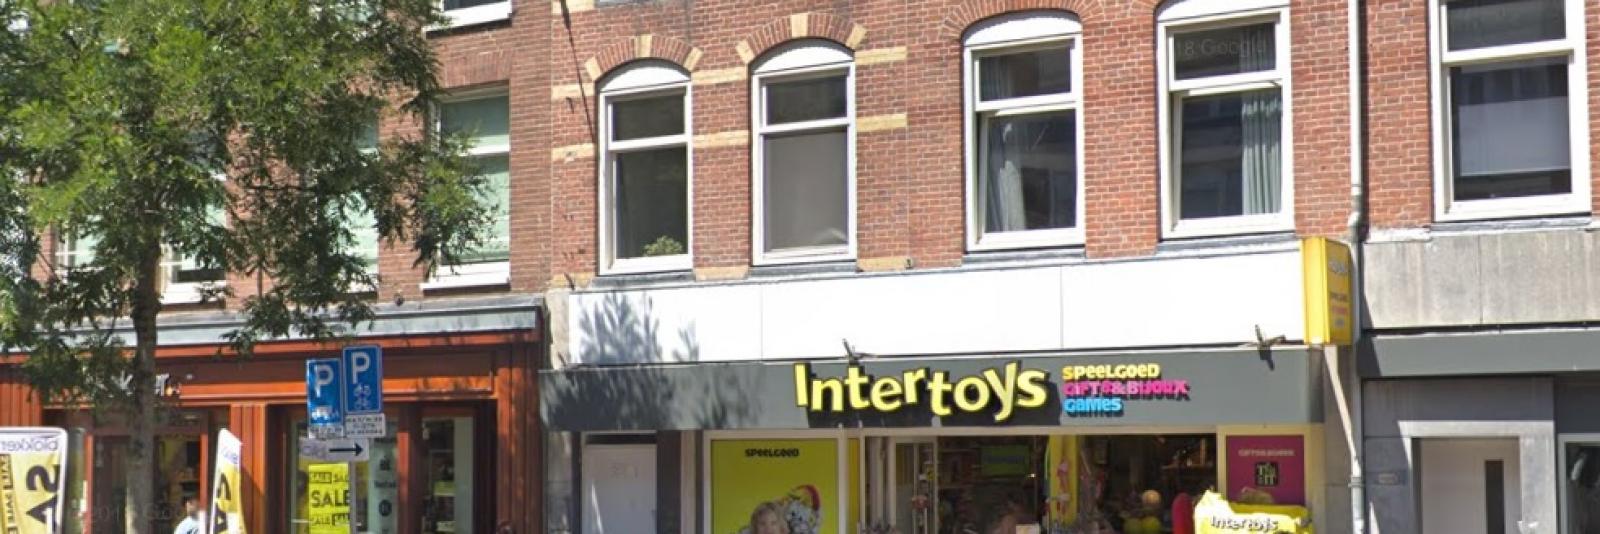 Continentaal teller Acht Doorstart voor failliet verklaarde speelgoedwinkel Intertoys - AT5